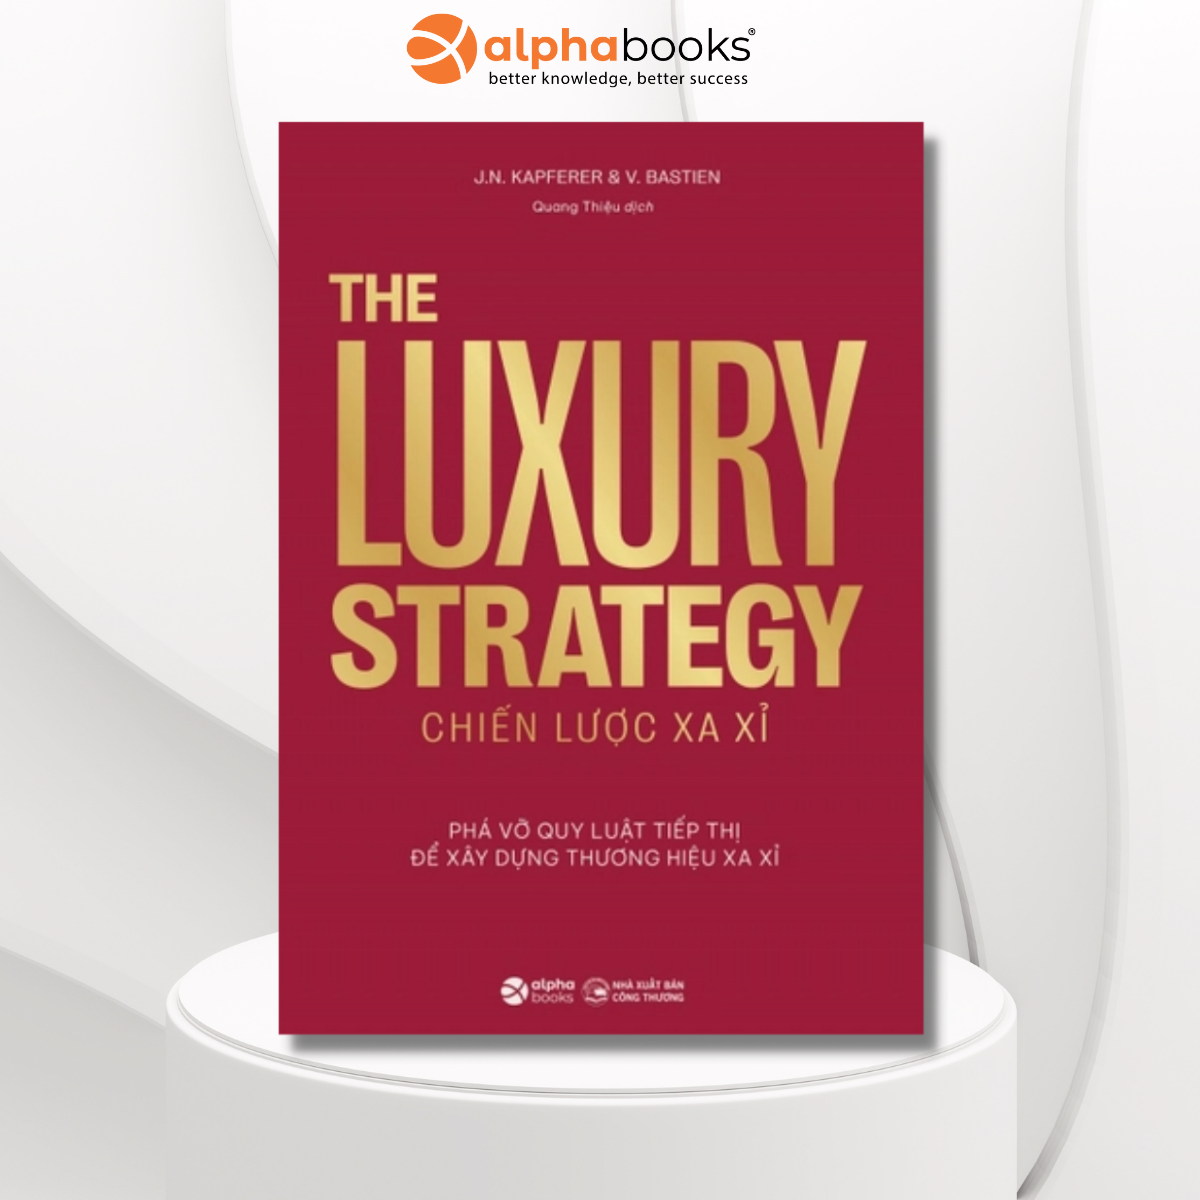 The Luxury Strategy: Chiến Lược Xa Xỉ - Phá Vỡ Quy Luật Tiếp Thị Để Xây Dựng Thương Hiệu Xa Xỉ _AL